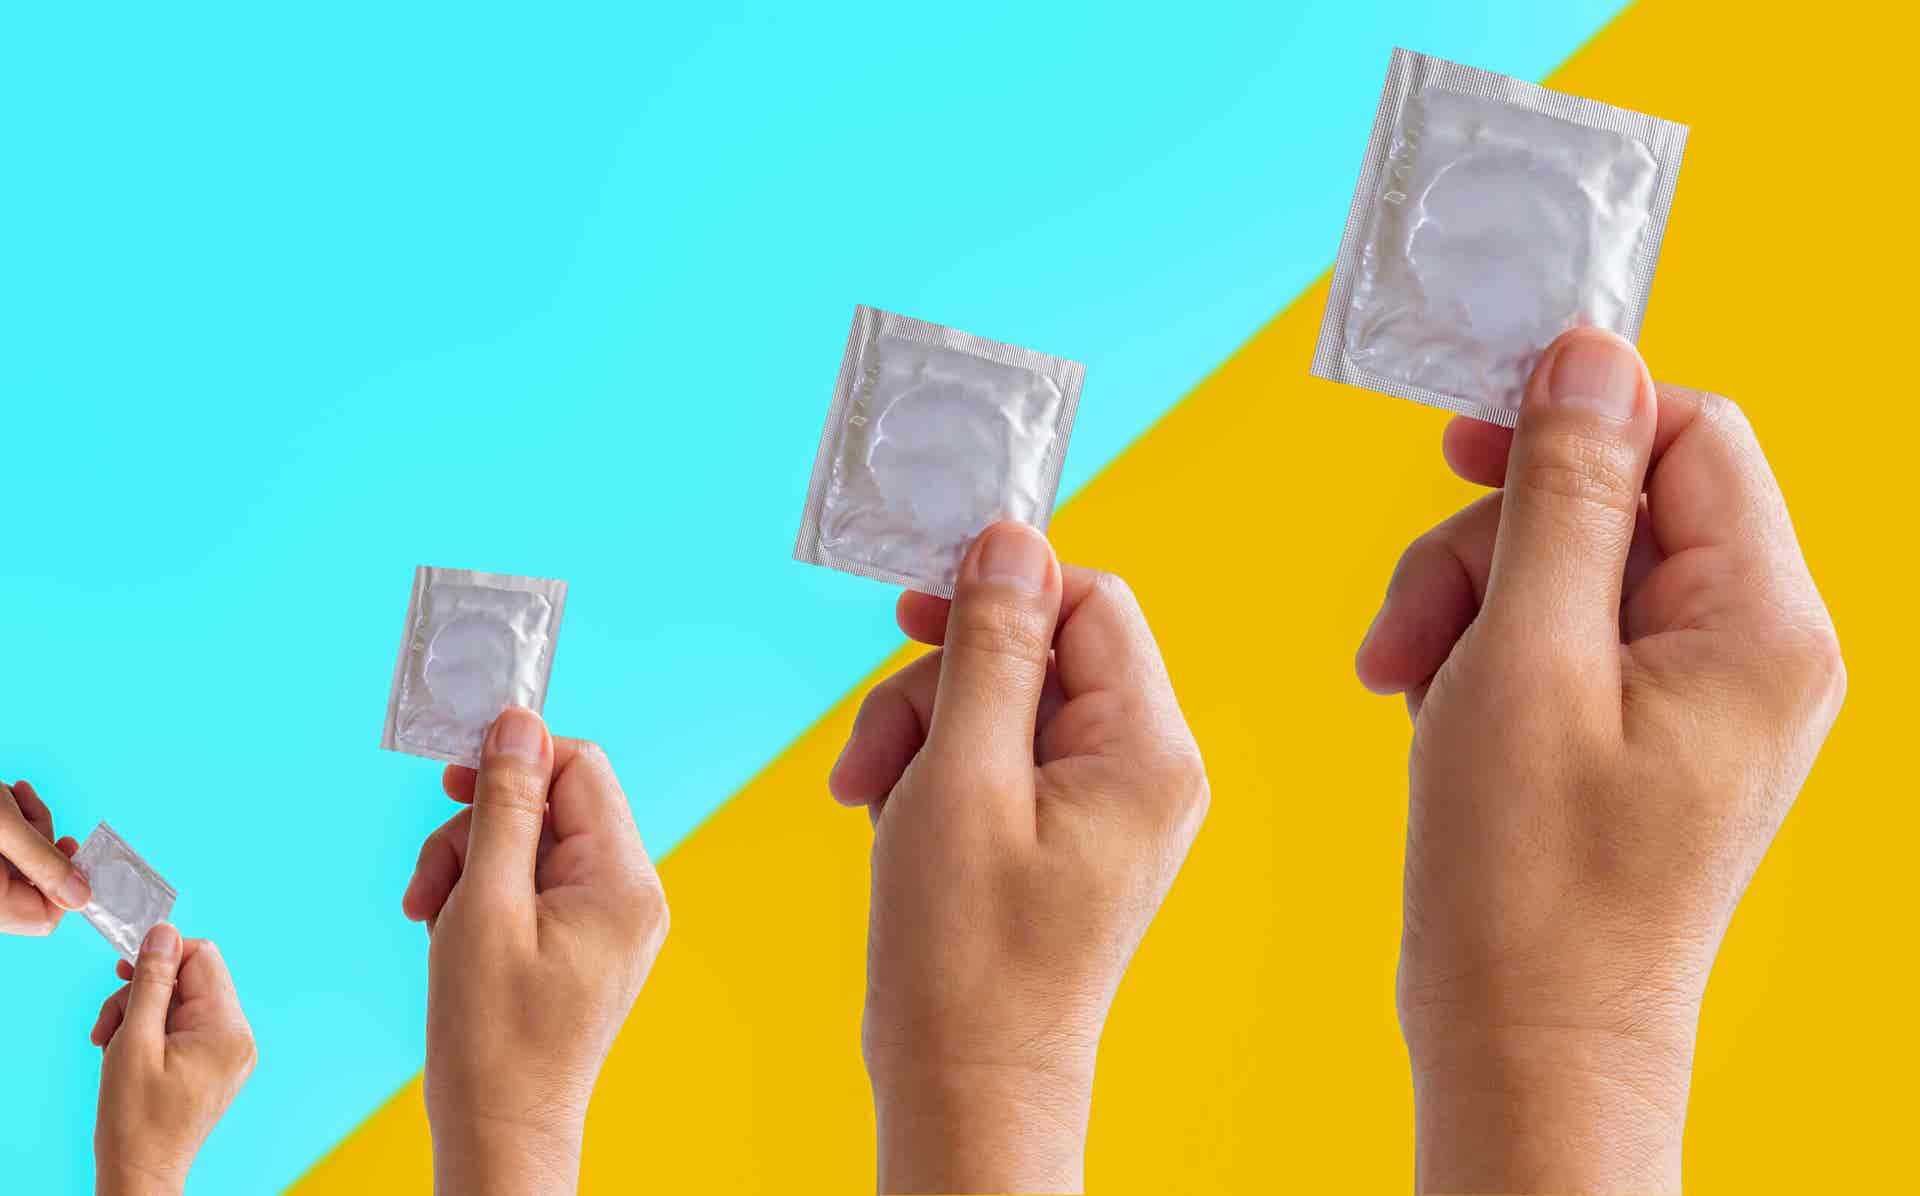 Preservativos y condones en las manos.